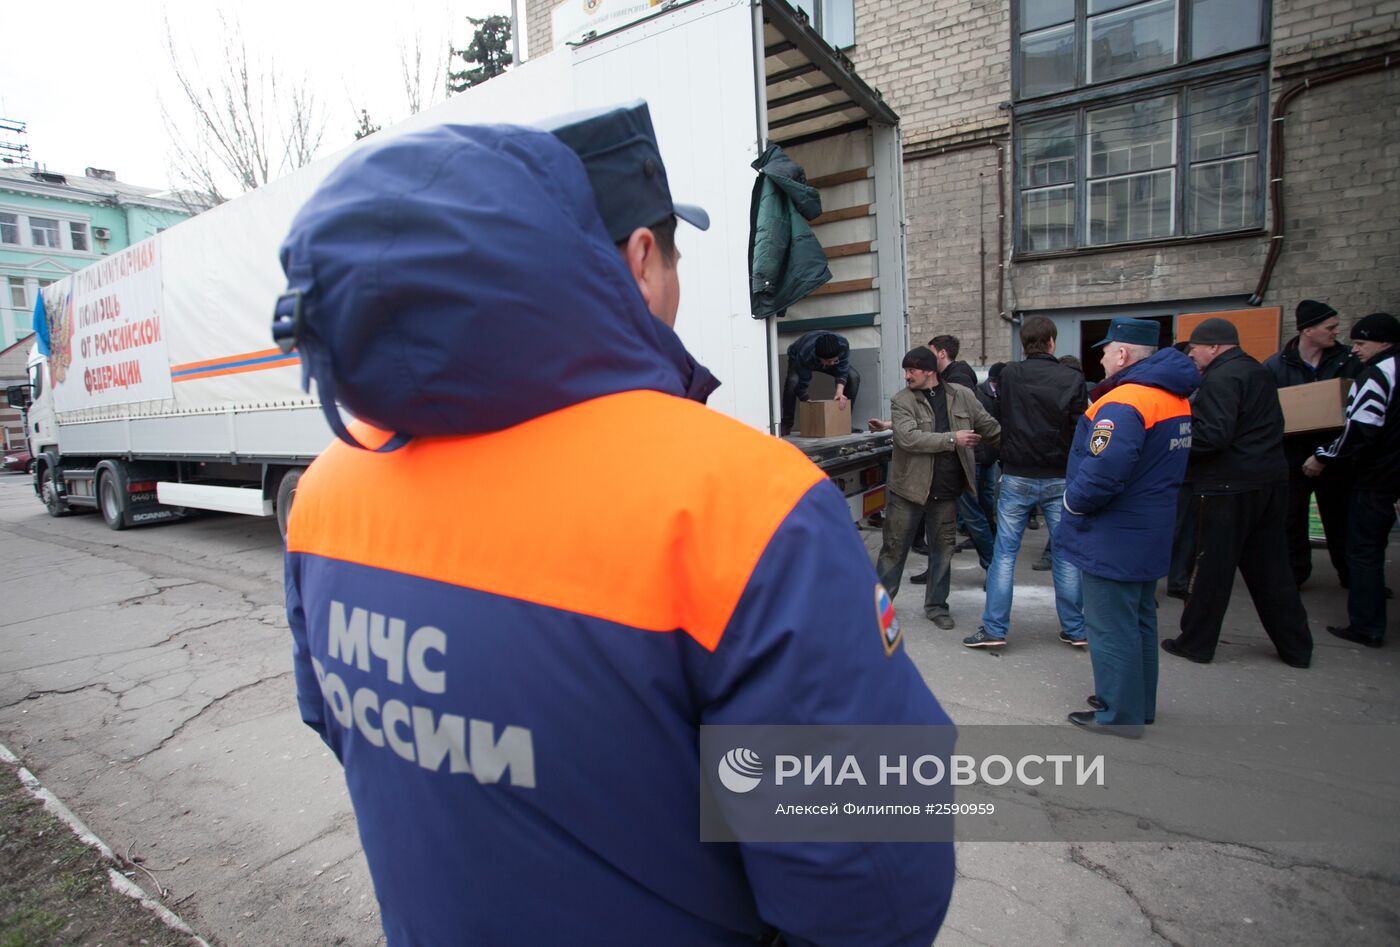 19-й конвой с российской гуманитарной помощью прибыл в Донецк